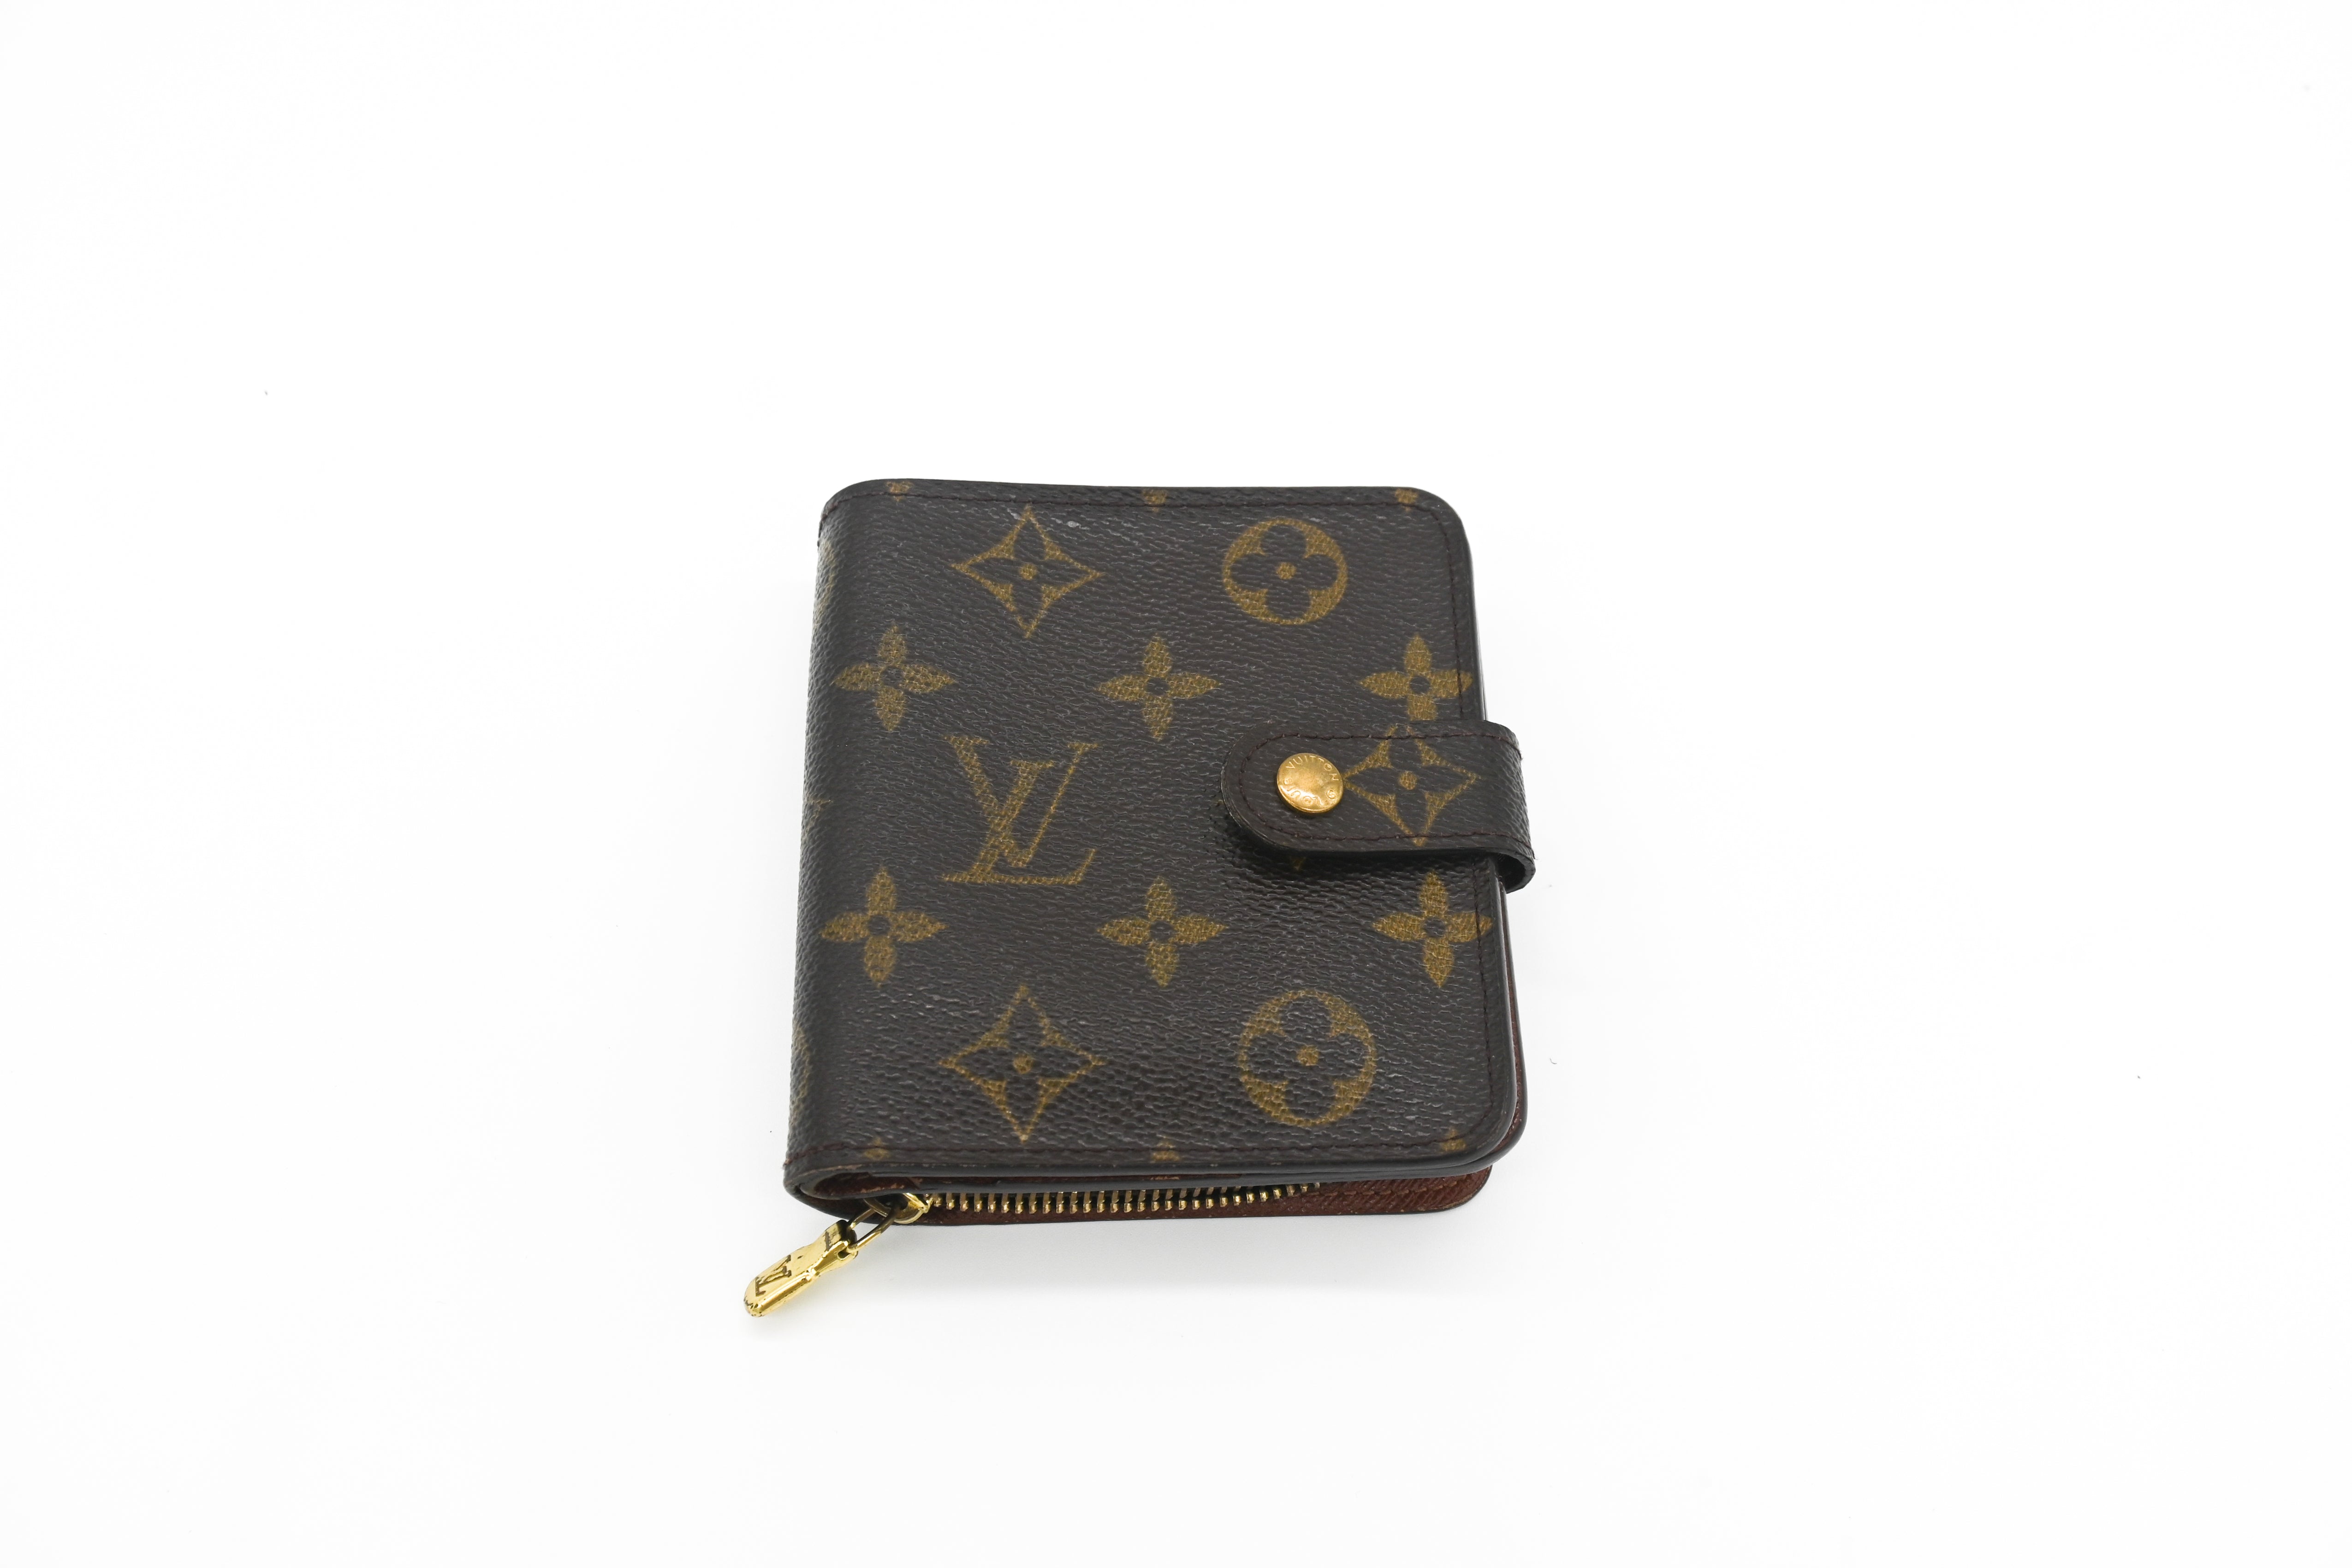 Authentic Louis Vuitton Monogram Compact Zip Bifold Wallet Coin Purse M61667